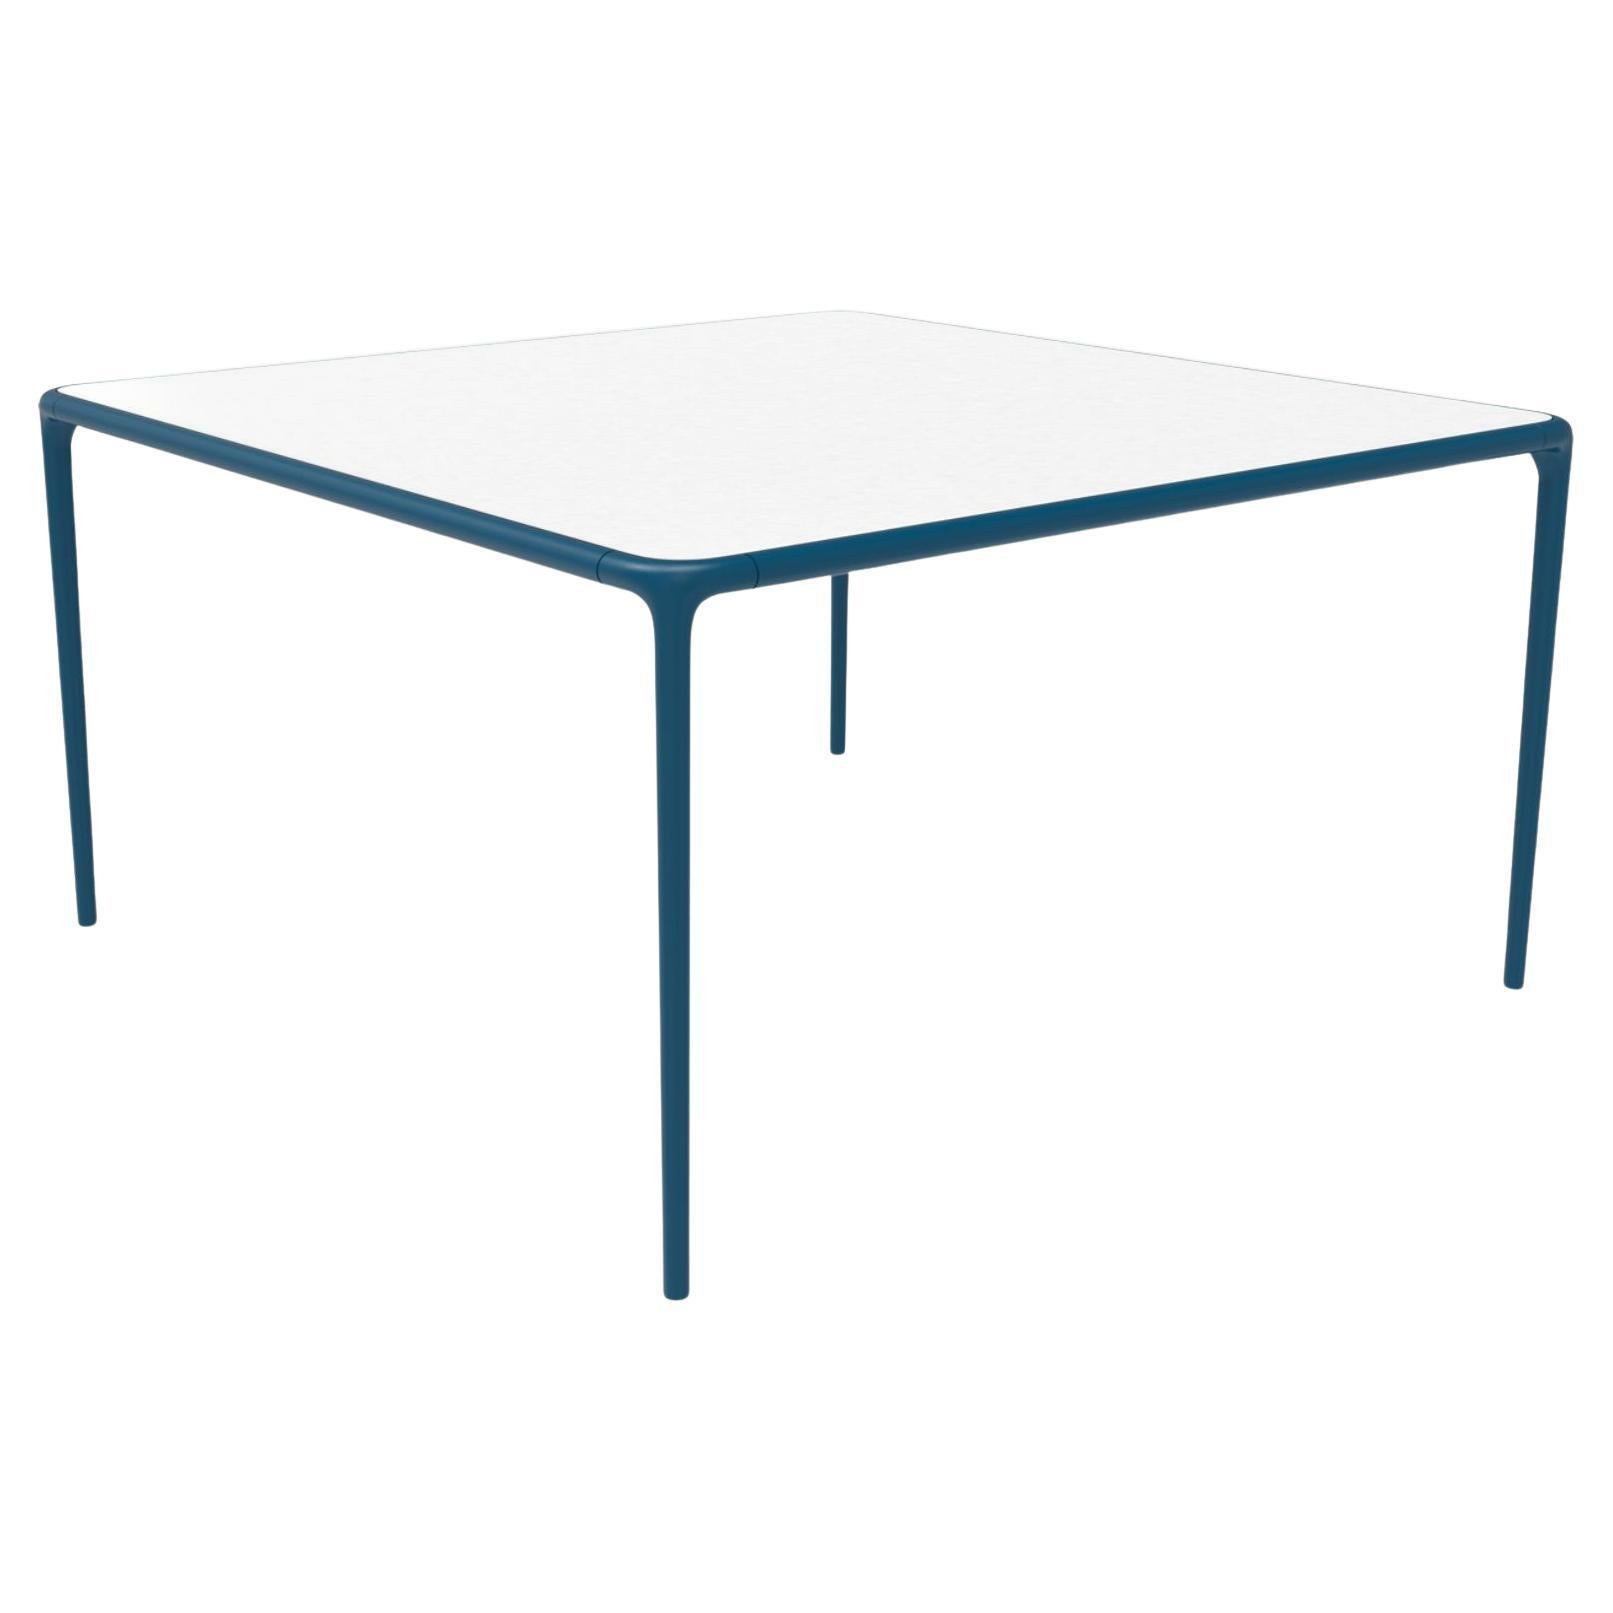 Table Xaloc bleu marine à plateau en verre 140 par Mowee